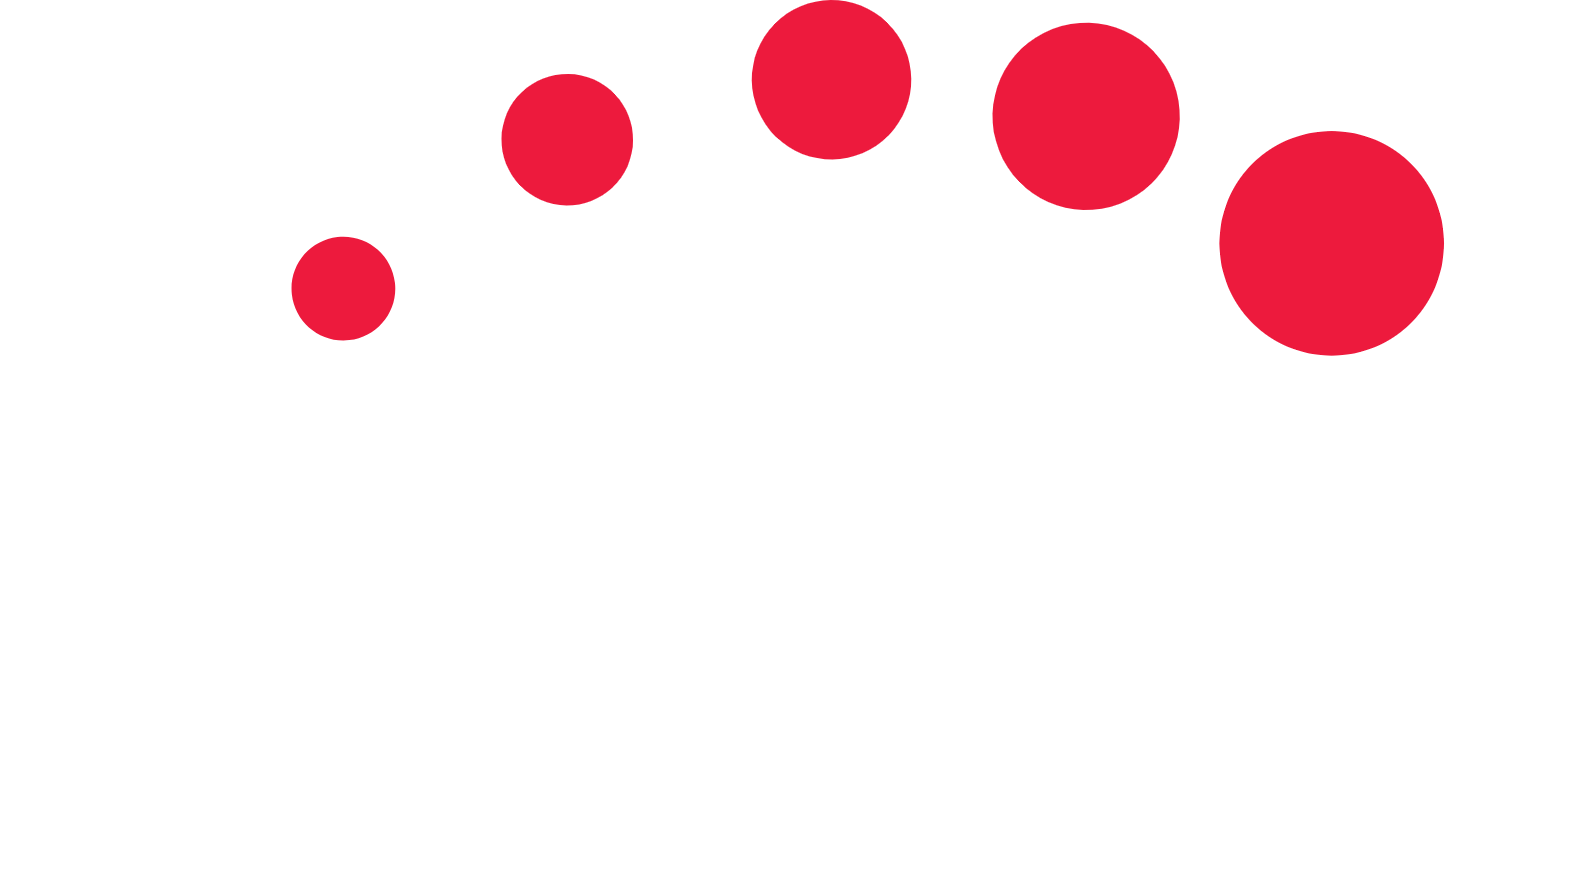 Singtel logo grand pour les fonds sombres (PNG transparent)